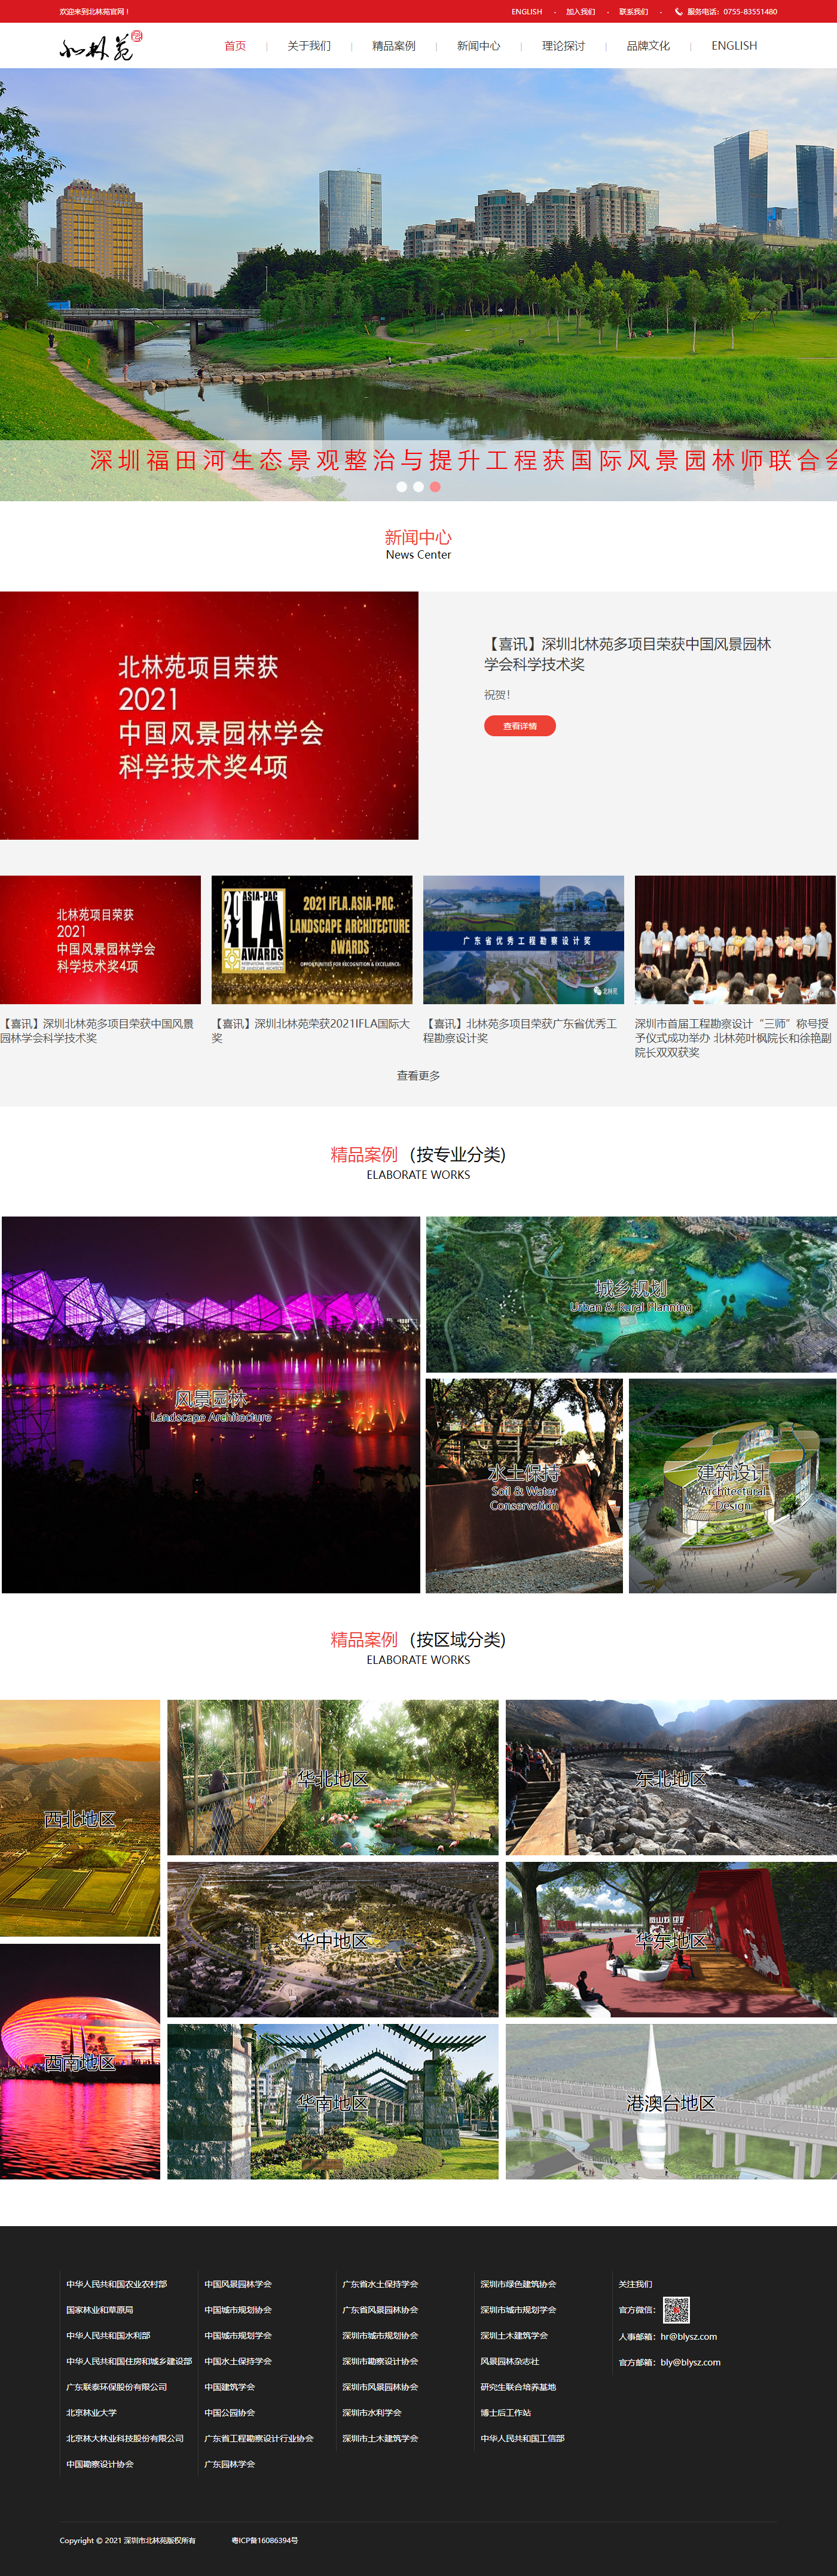 深圳市北林苑景观及建筑规划设计院有限公司网站案例